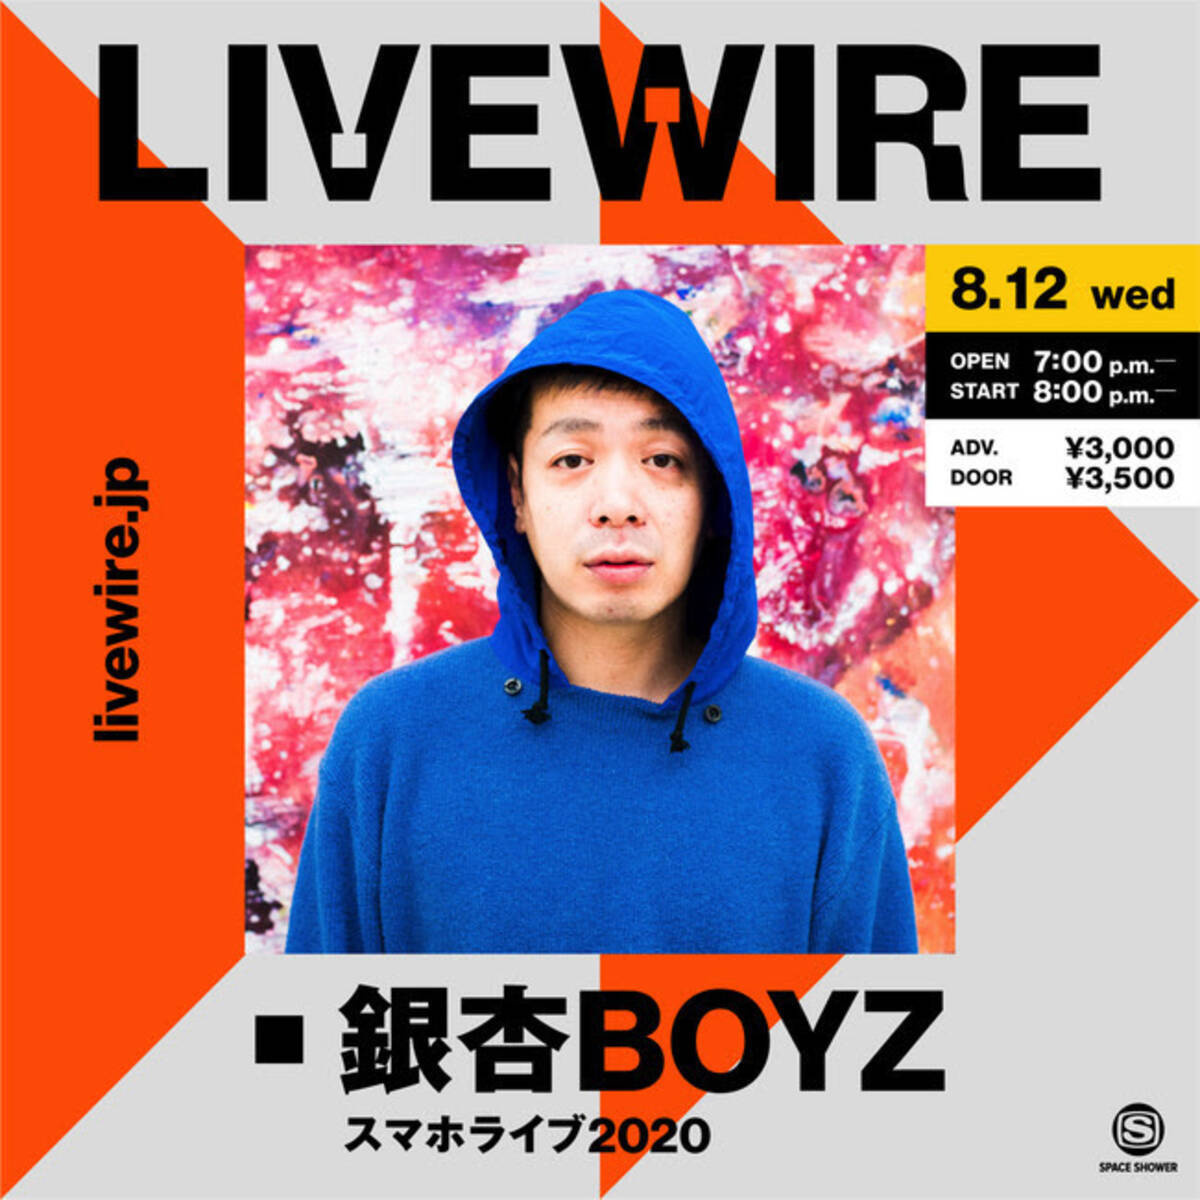 銀杏boyz 全編スマホ撮影によるオンラインライブをお届け Livewireオープニングシリーズに登場 年8月7日 エキサイトニュース